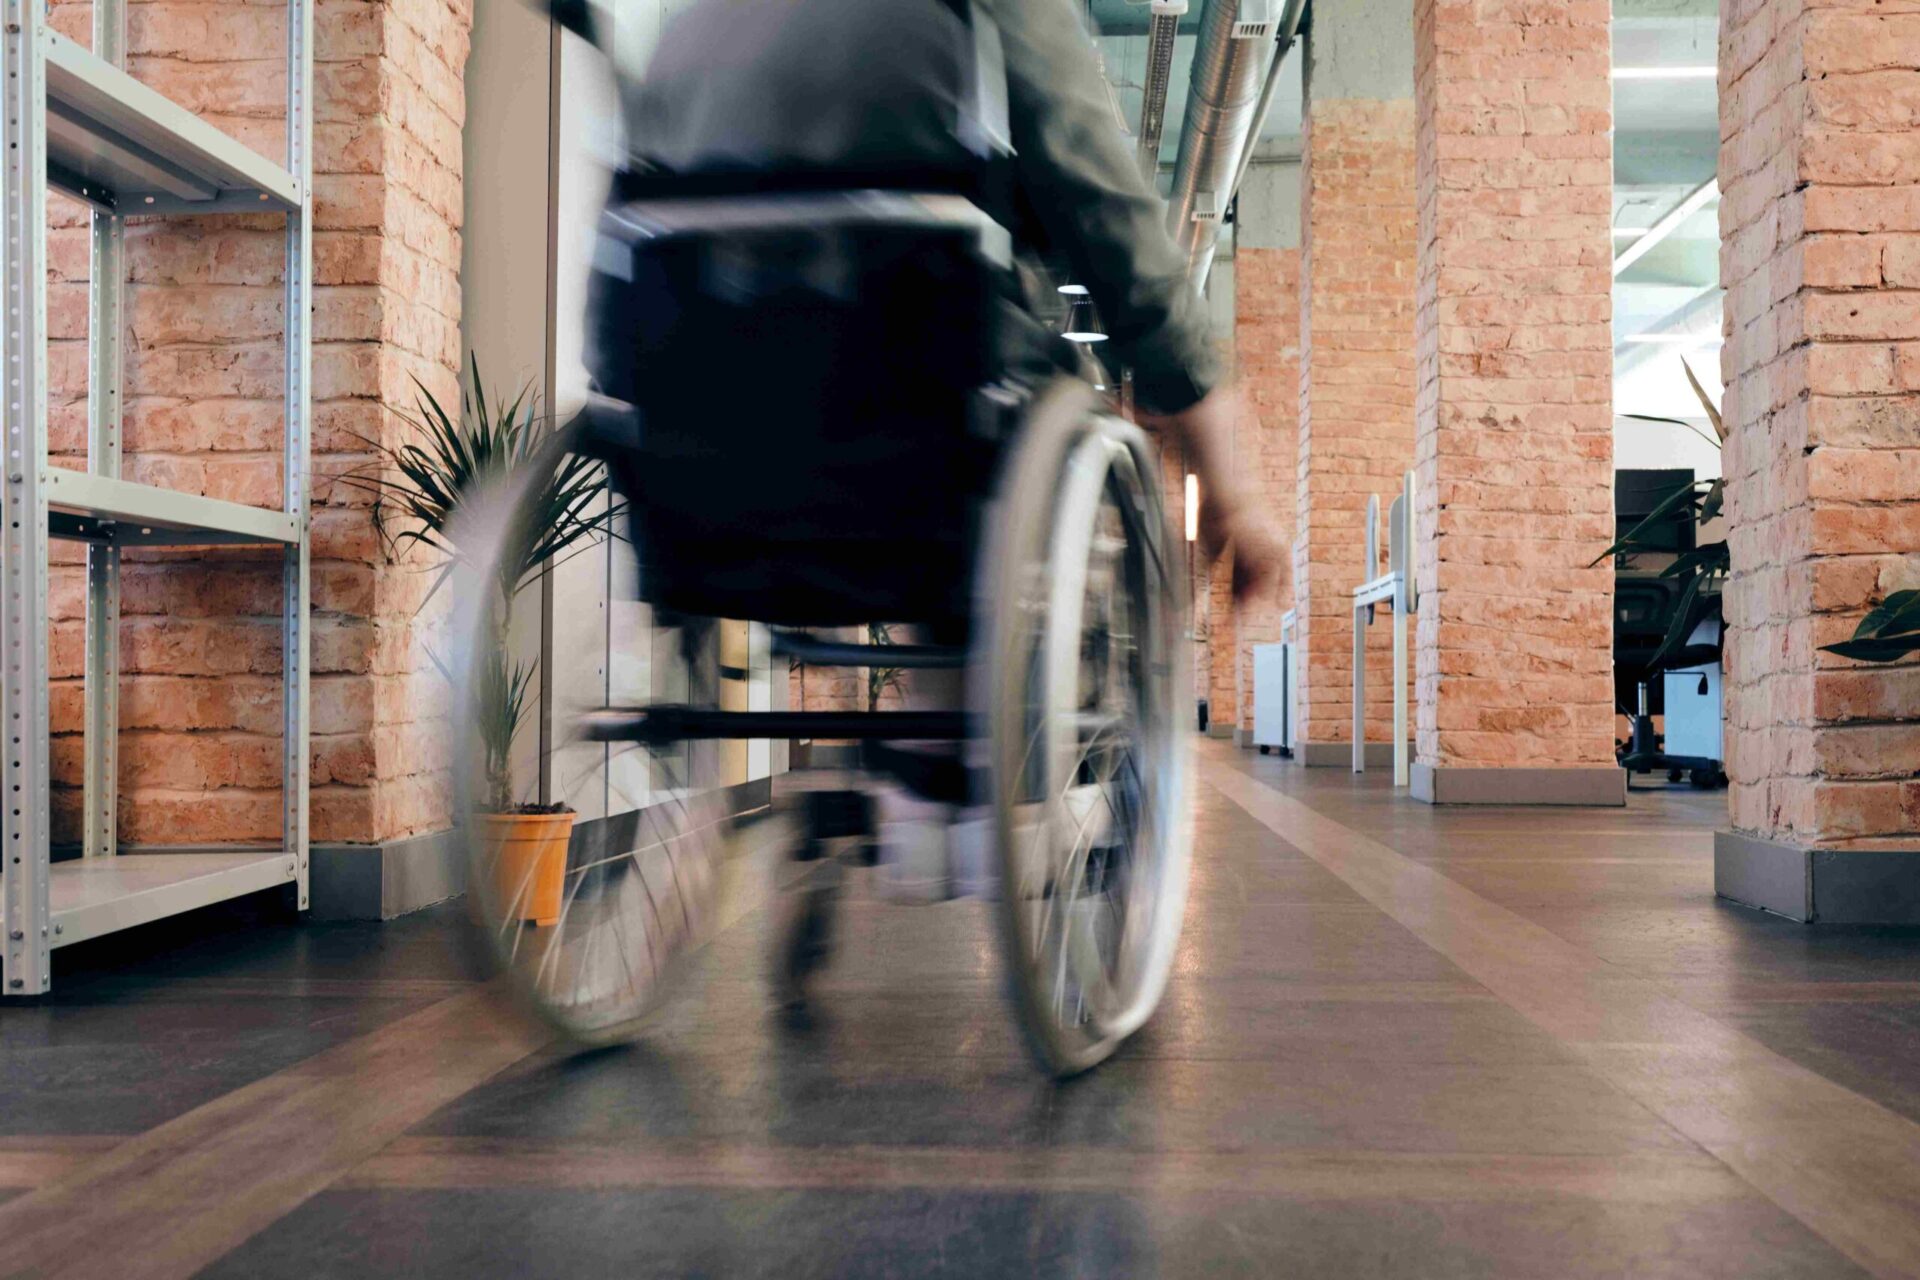 rollstuhl pflegegrad 2: Dieses Bild zeigt einen Rollstuhl im Haus